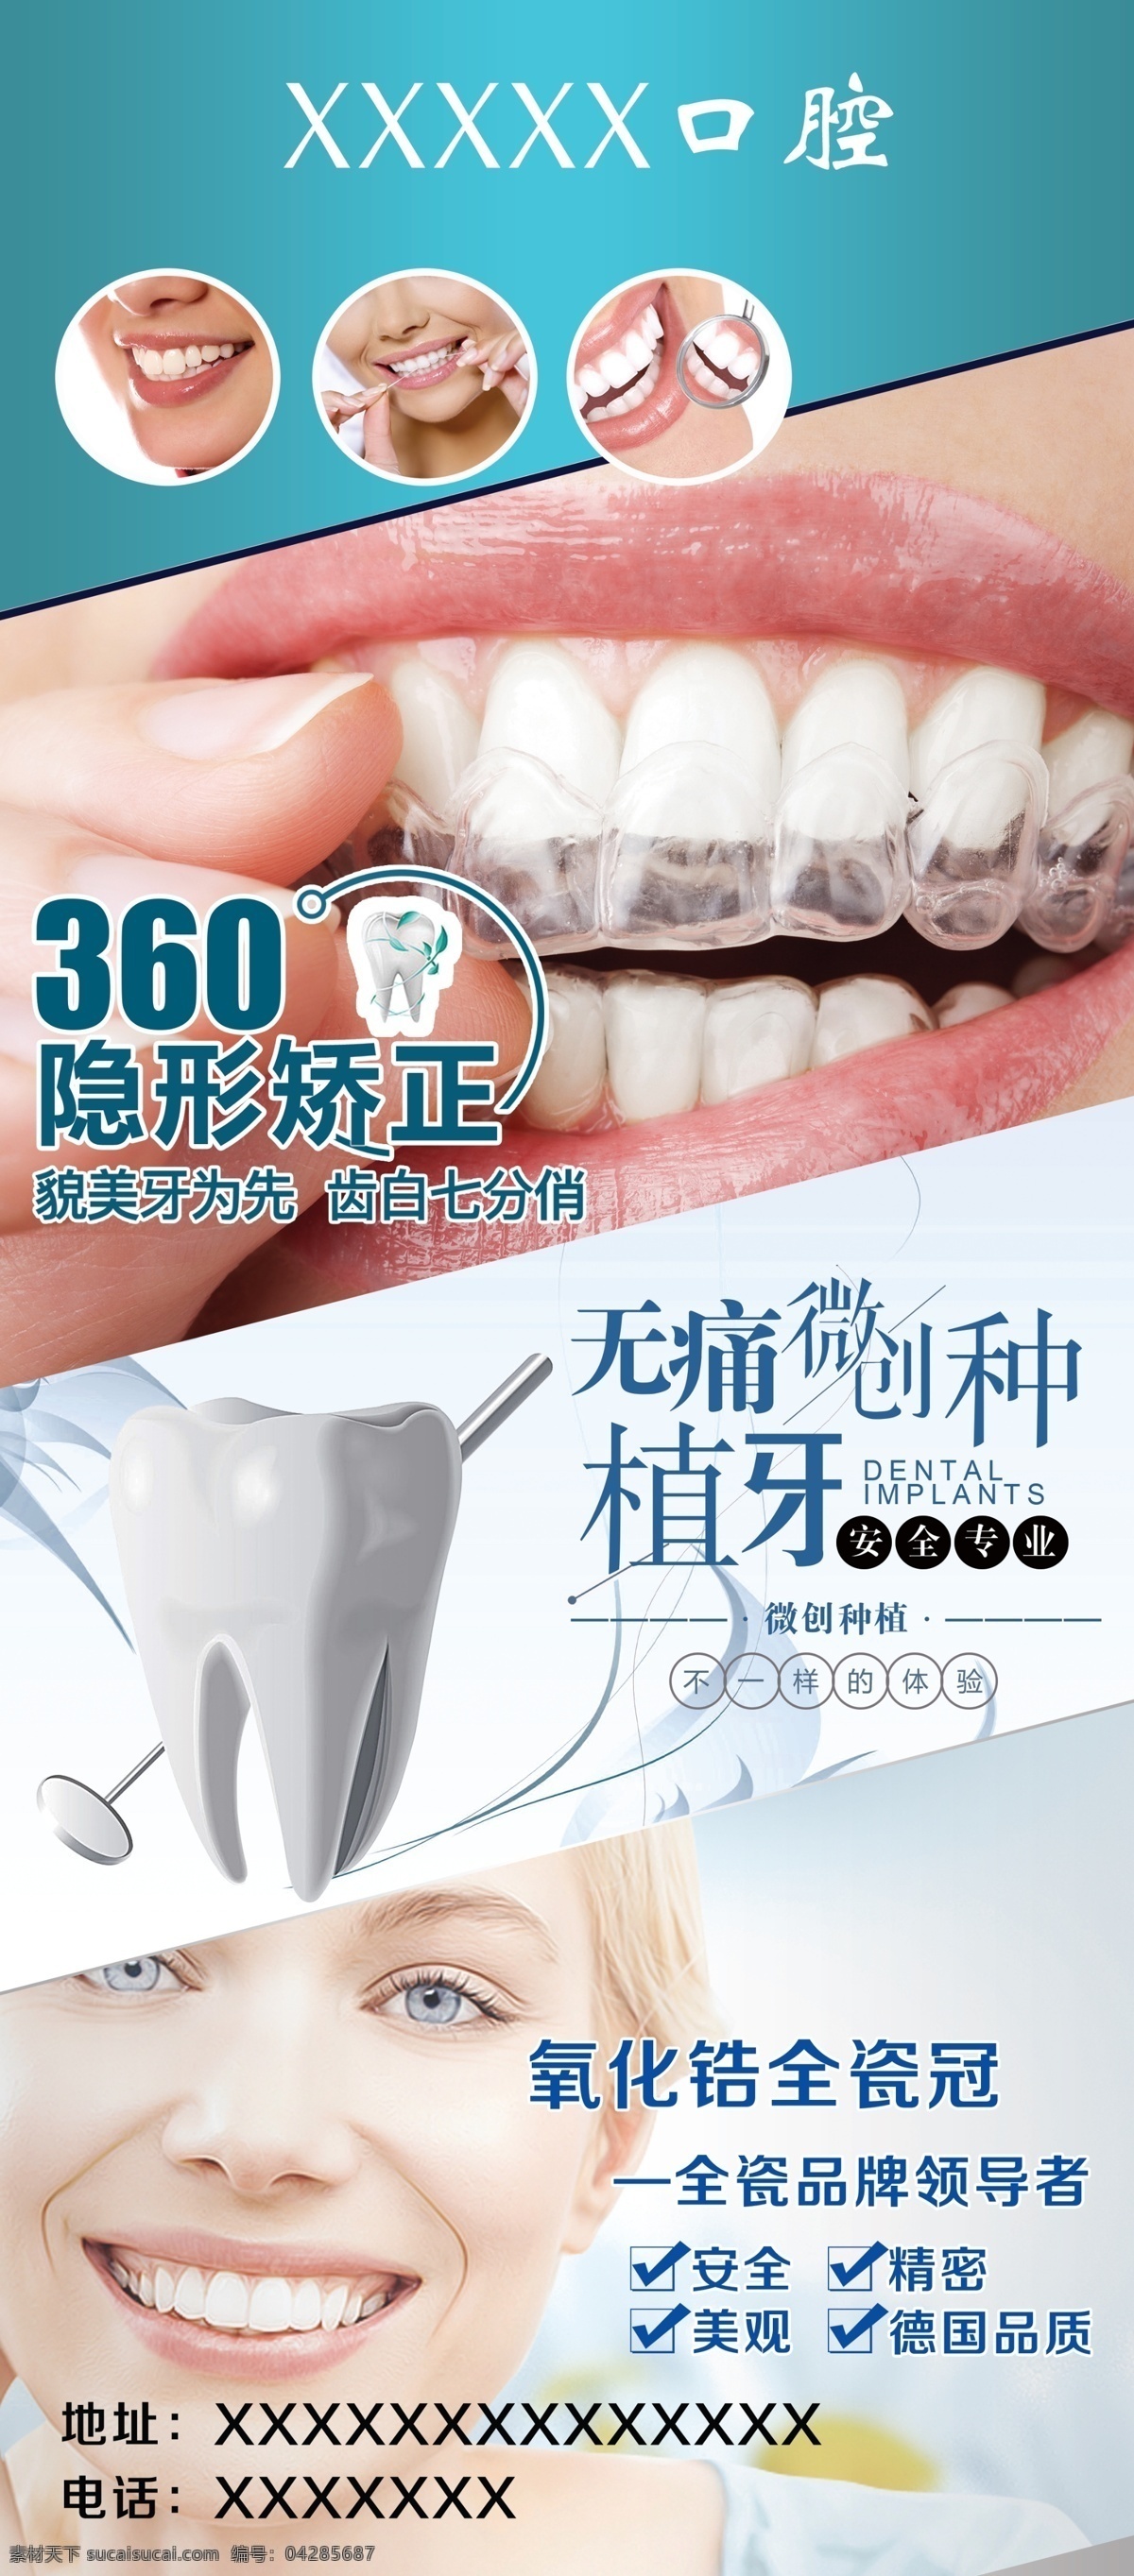 牙科 美容 牙 口腔 展架 植入 微创 修牙 牙齿 分层